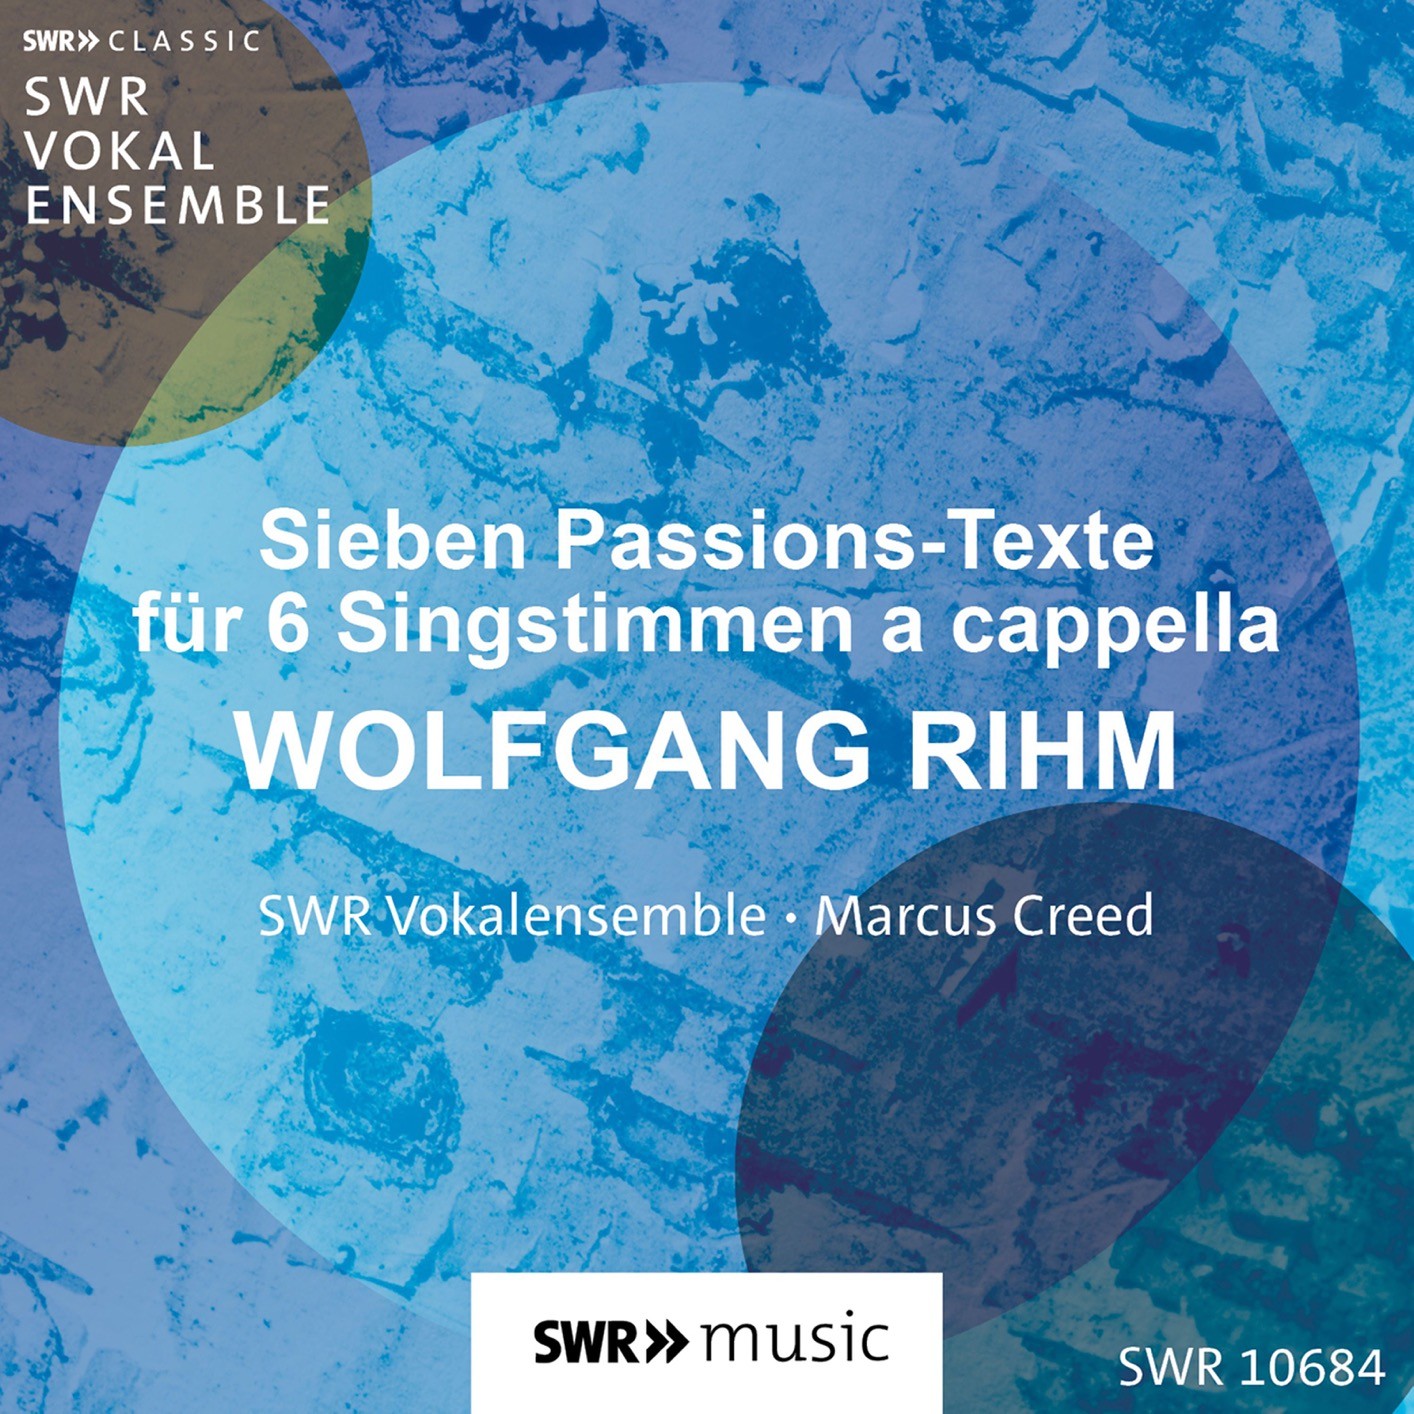 SWR Vokalensemble, Marcus Creed - Wolfgang Rihm: Sieben Passions-Texte für sechs Stimmen (2022) [FLAC 24bit/48kHz]